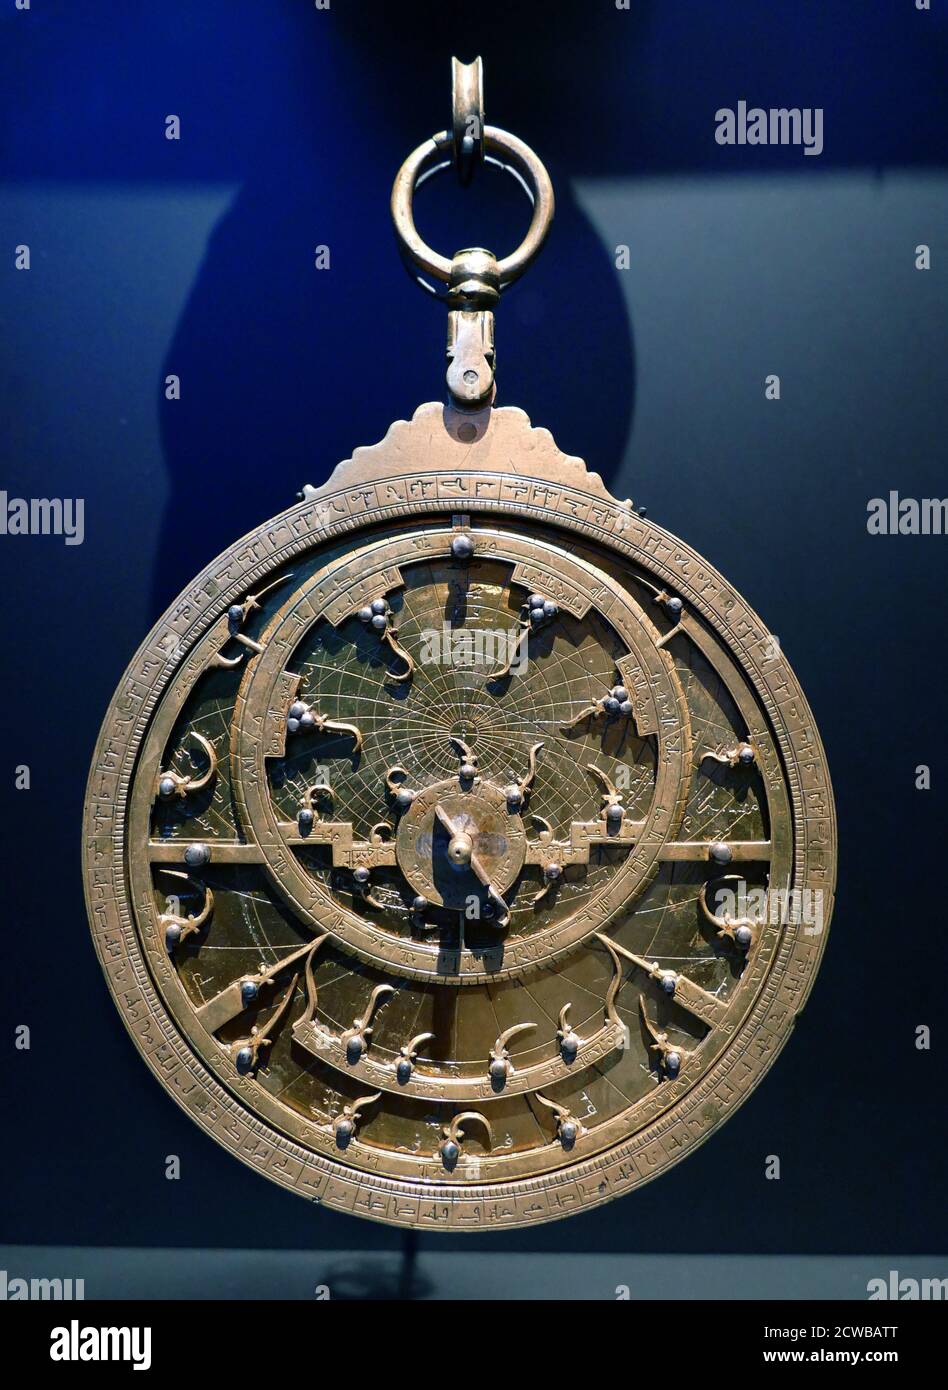 Planispherisches Astrolabium, Nordafrika, 18. Jahrhundert. Silber. Ein Astrolabium war ein ausgeklügeltes Neigungsmesser, das von Astronomen und Navigatoren historisch verwendet wurde, um die Höhe über dem Horizont eines Himmelskörpers zu messen, Tag oder Nacht. Es kann verwendet werden, um Sterne oder Planeten zu identifizieren, um lokalen Breitengrad gegebenen lokalen Zeit zu bestimmen, zu vermessen, oder zu triangulieren. Es wurde in der klassischen Antike, dem islamischen Goldenen Zeitalter, dem europäischen Mittelalter und dem Zeitalter der Entdeckung für all diese Zwecke verwendet. Stockfoto